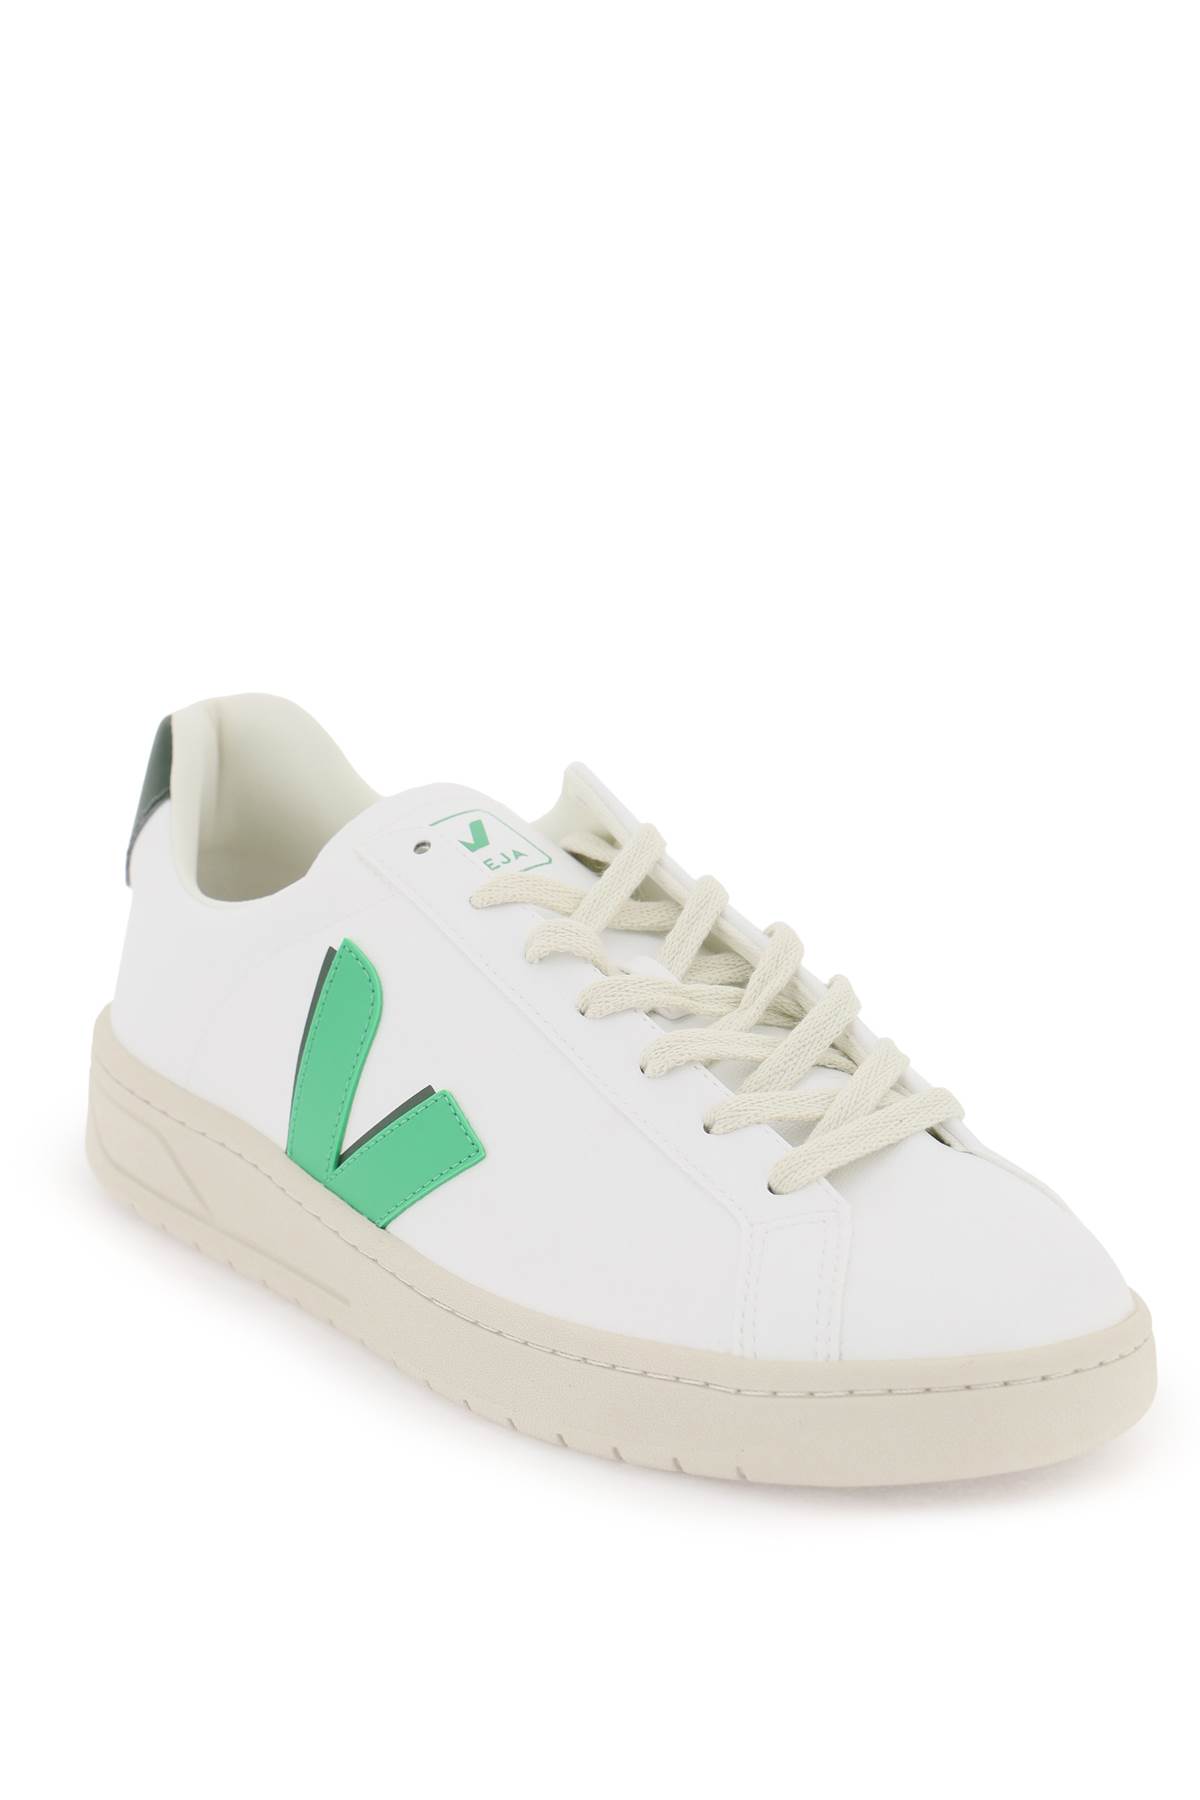 Shop Veja C.w.l. Urca Vegan Sneakers In White Leaf Cyprus (white)